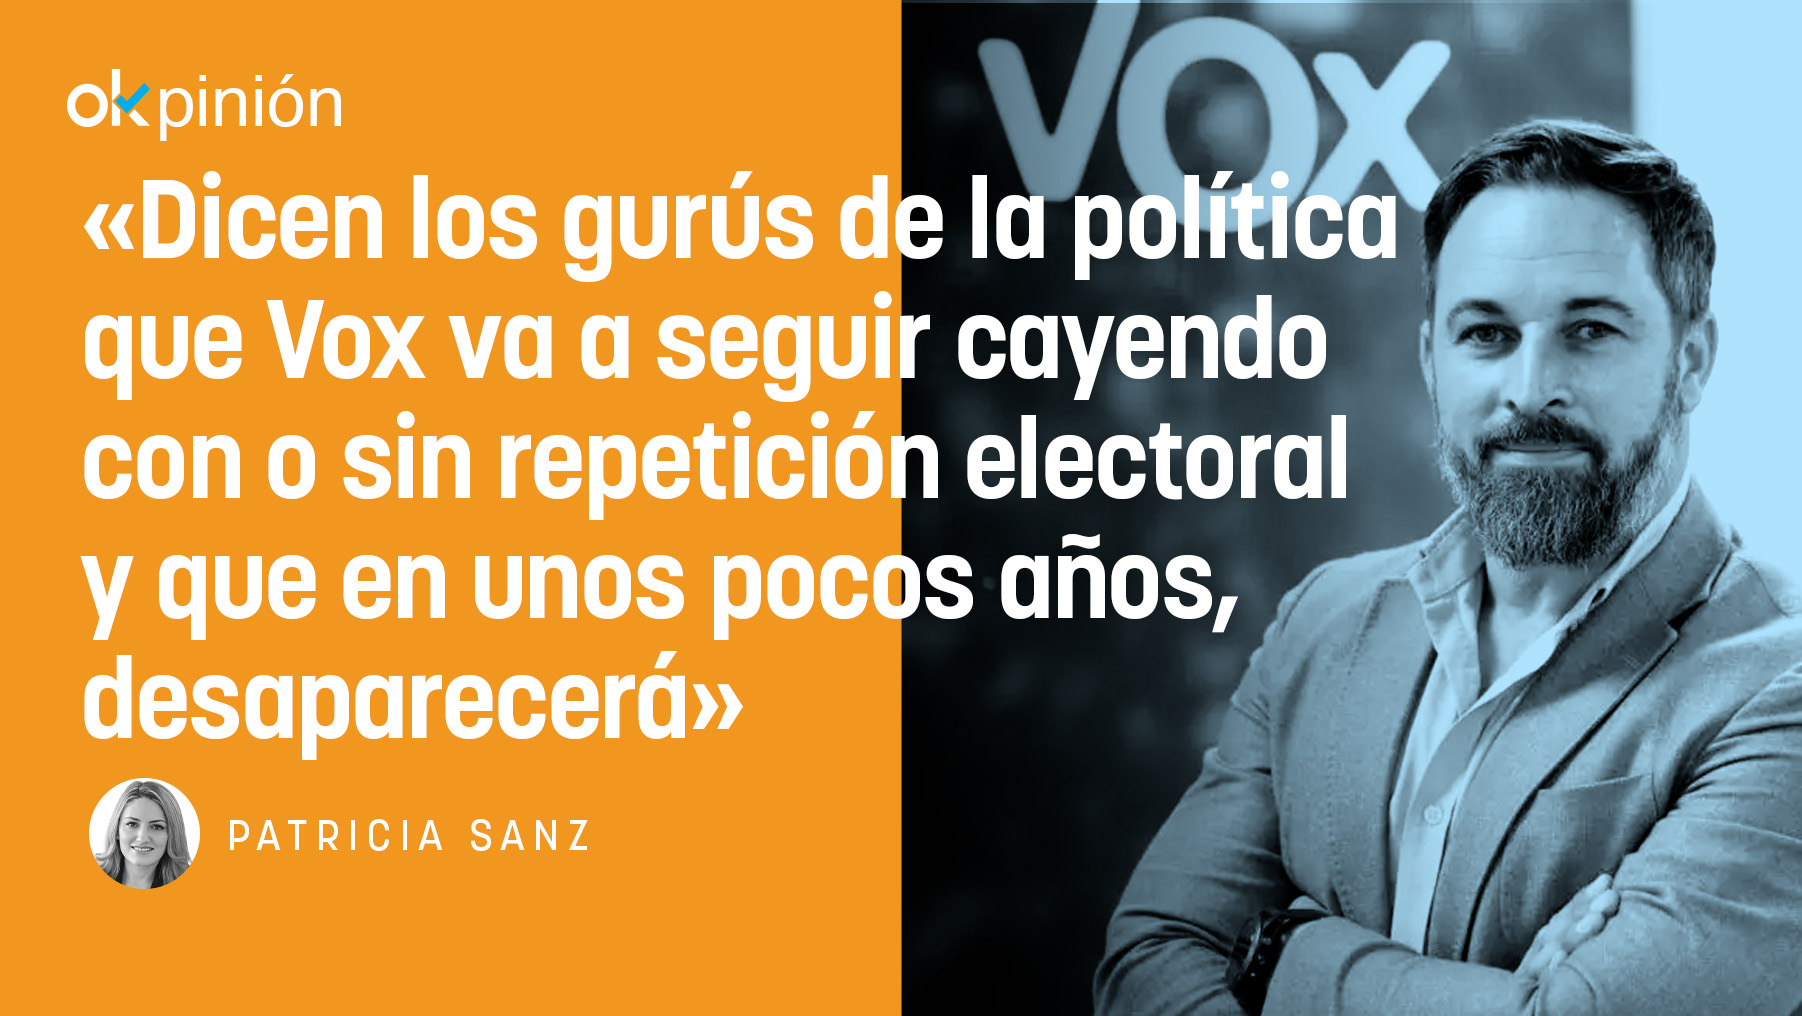 Es complicada la volatilización de un partido que representa a casi el 12,4% de los votantes españoles.